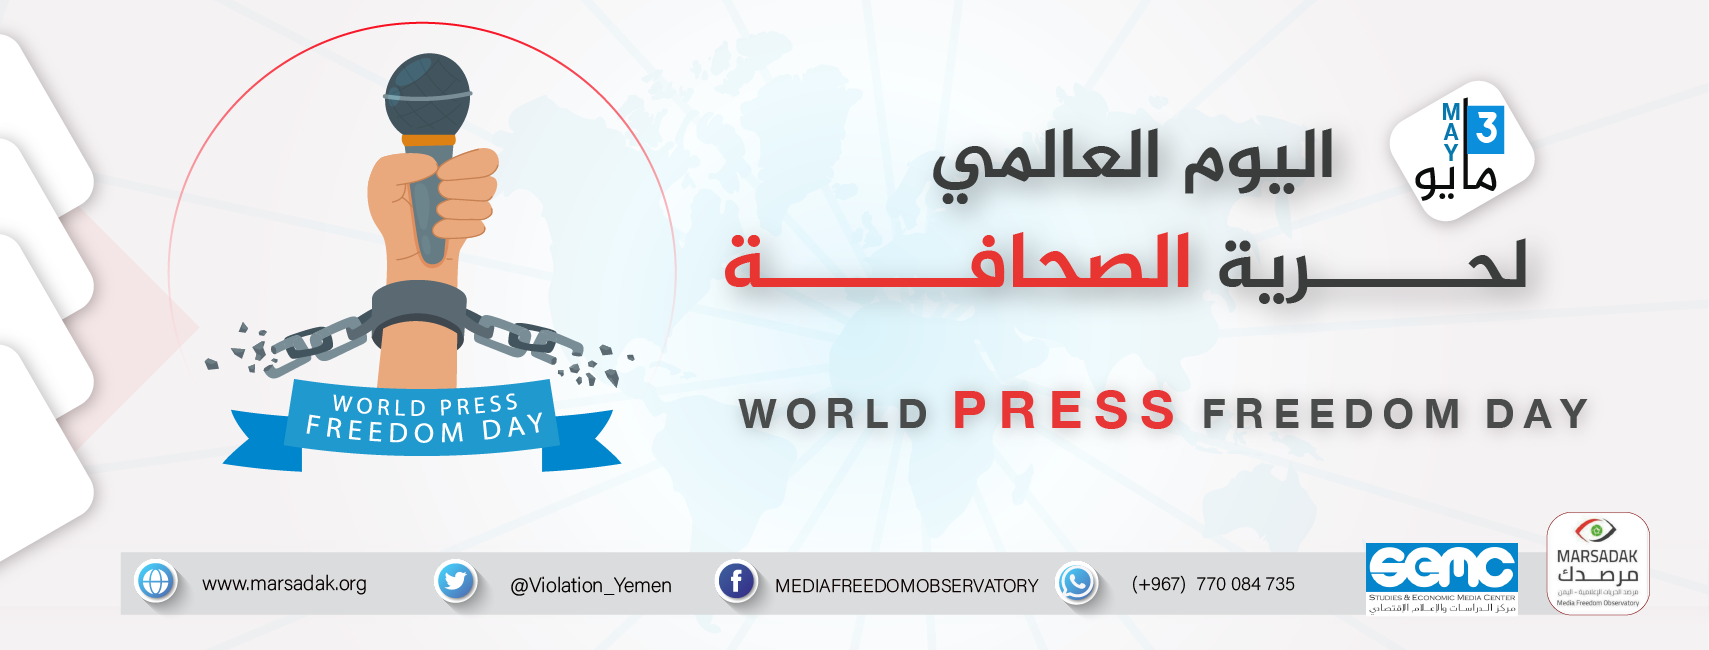 بمناسبة اليوم العالمي لحرية الصحافة: